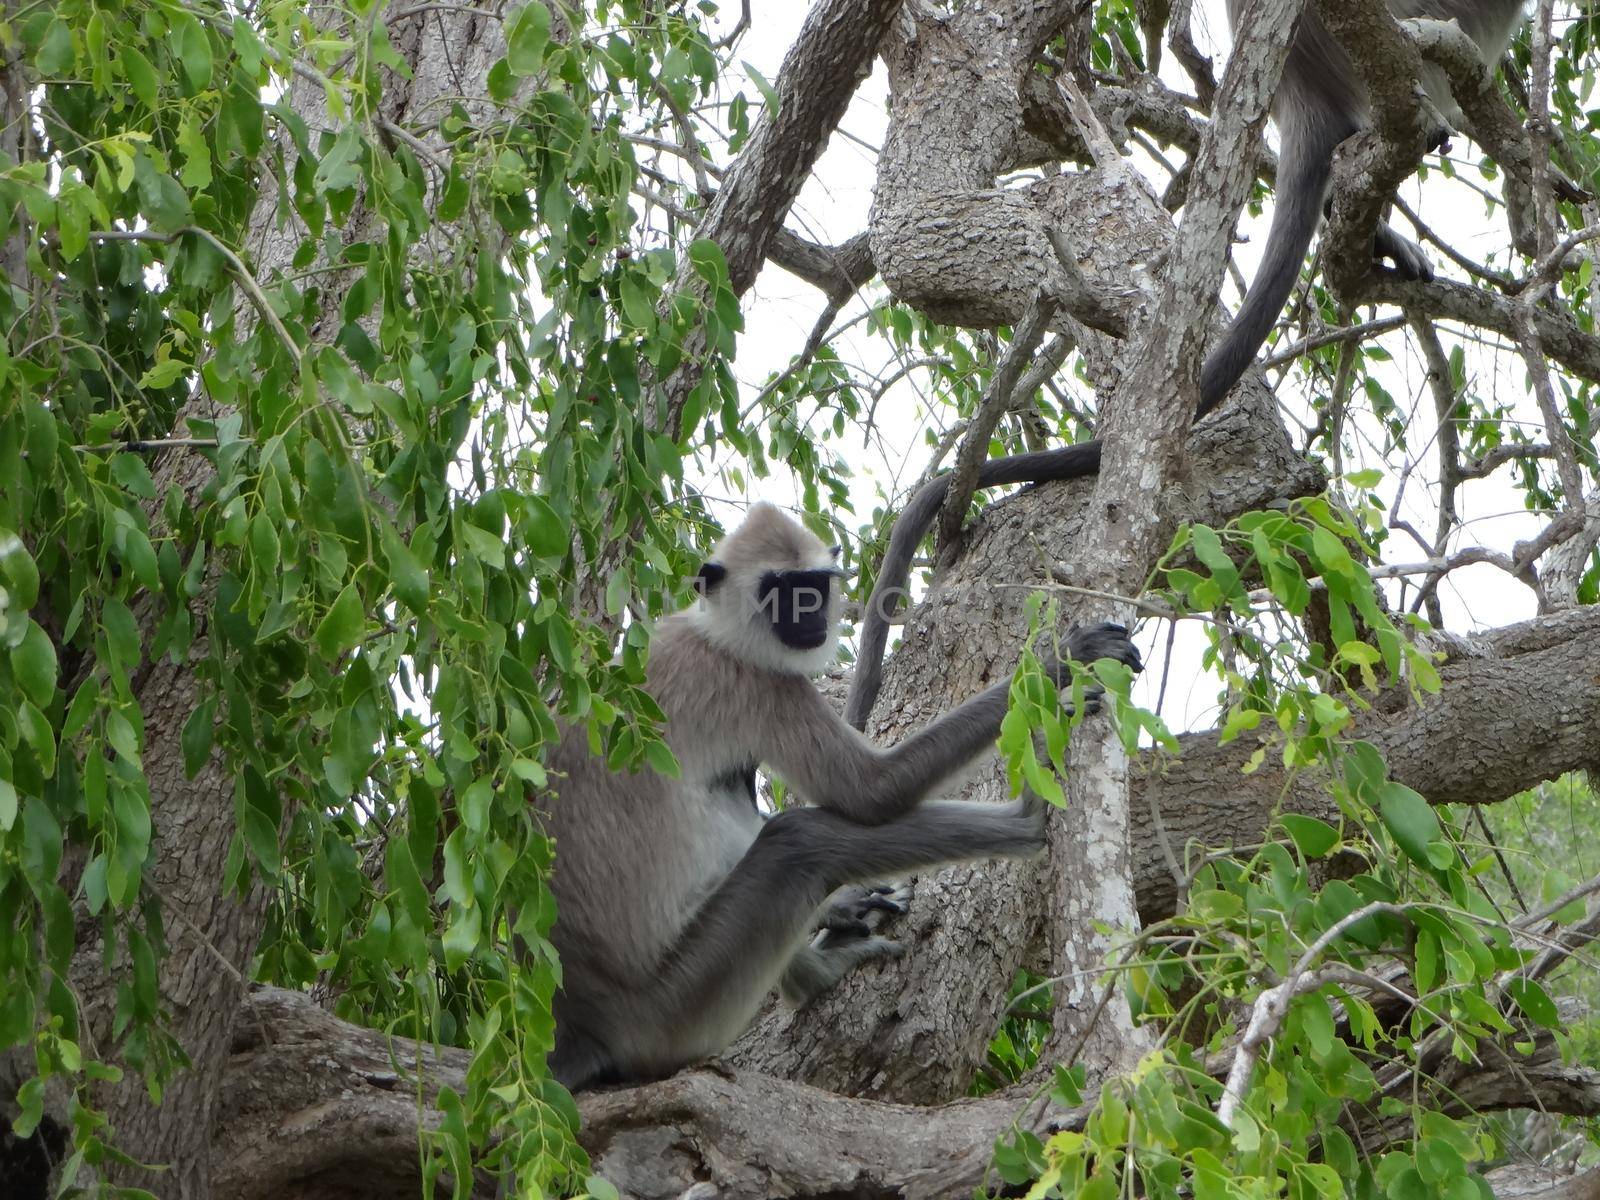 Vervet monkeys in Yala National Park, Sri Lanka by Capos